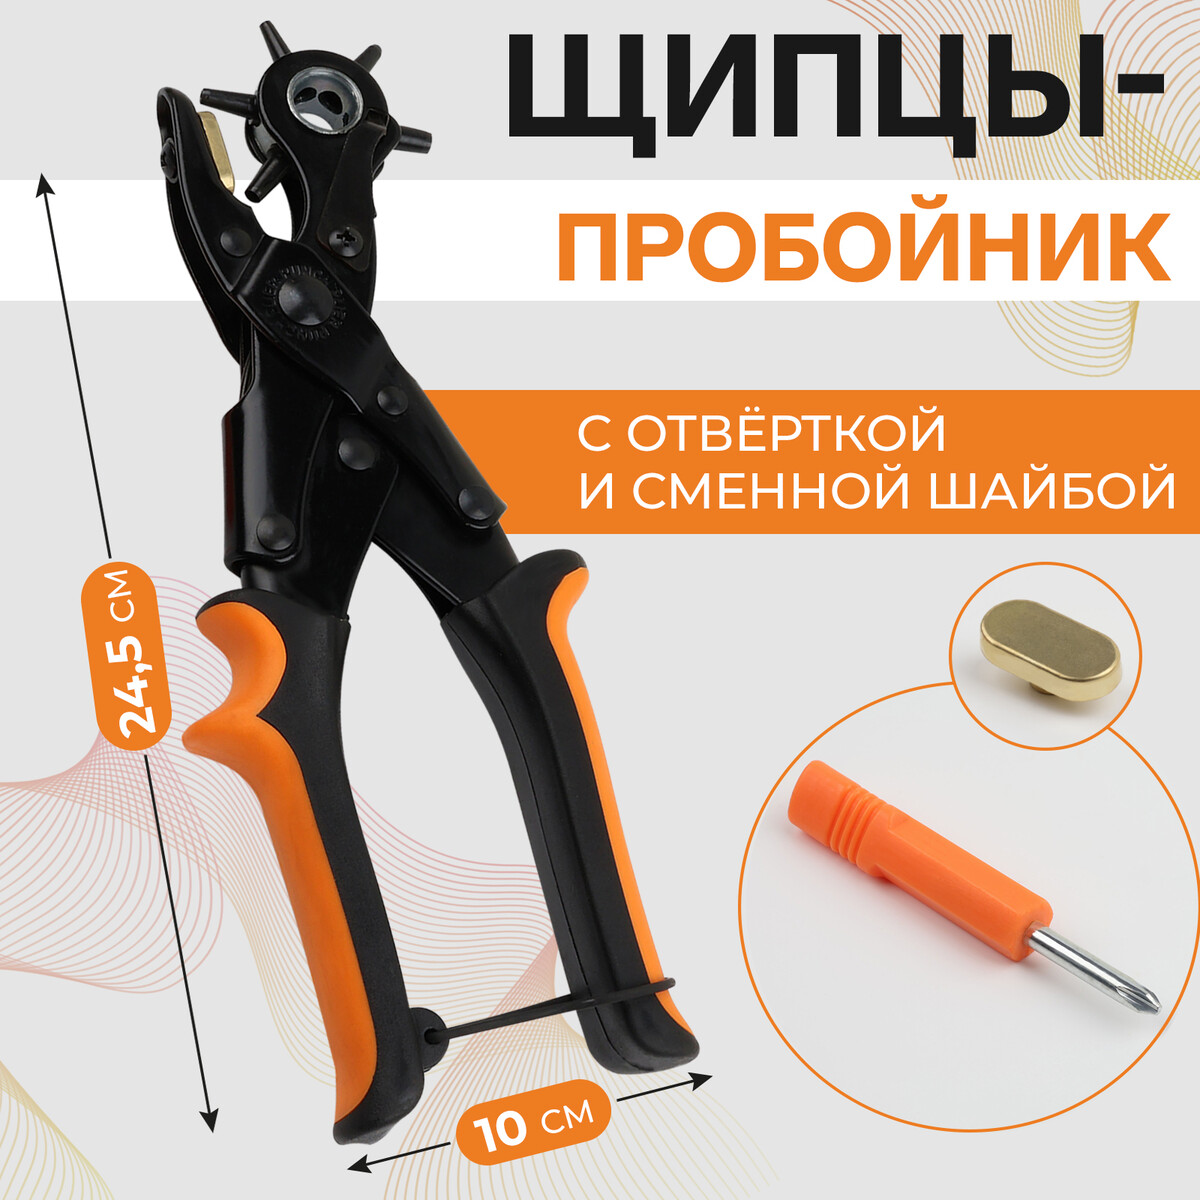 Щипцы-пробойник, со сменной шайбой, с отверткой, 24,5 × 10 см, цвет оранжевый/черный